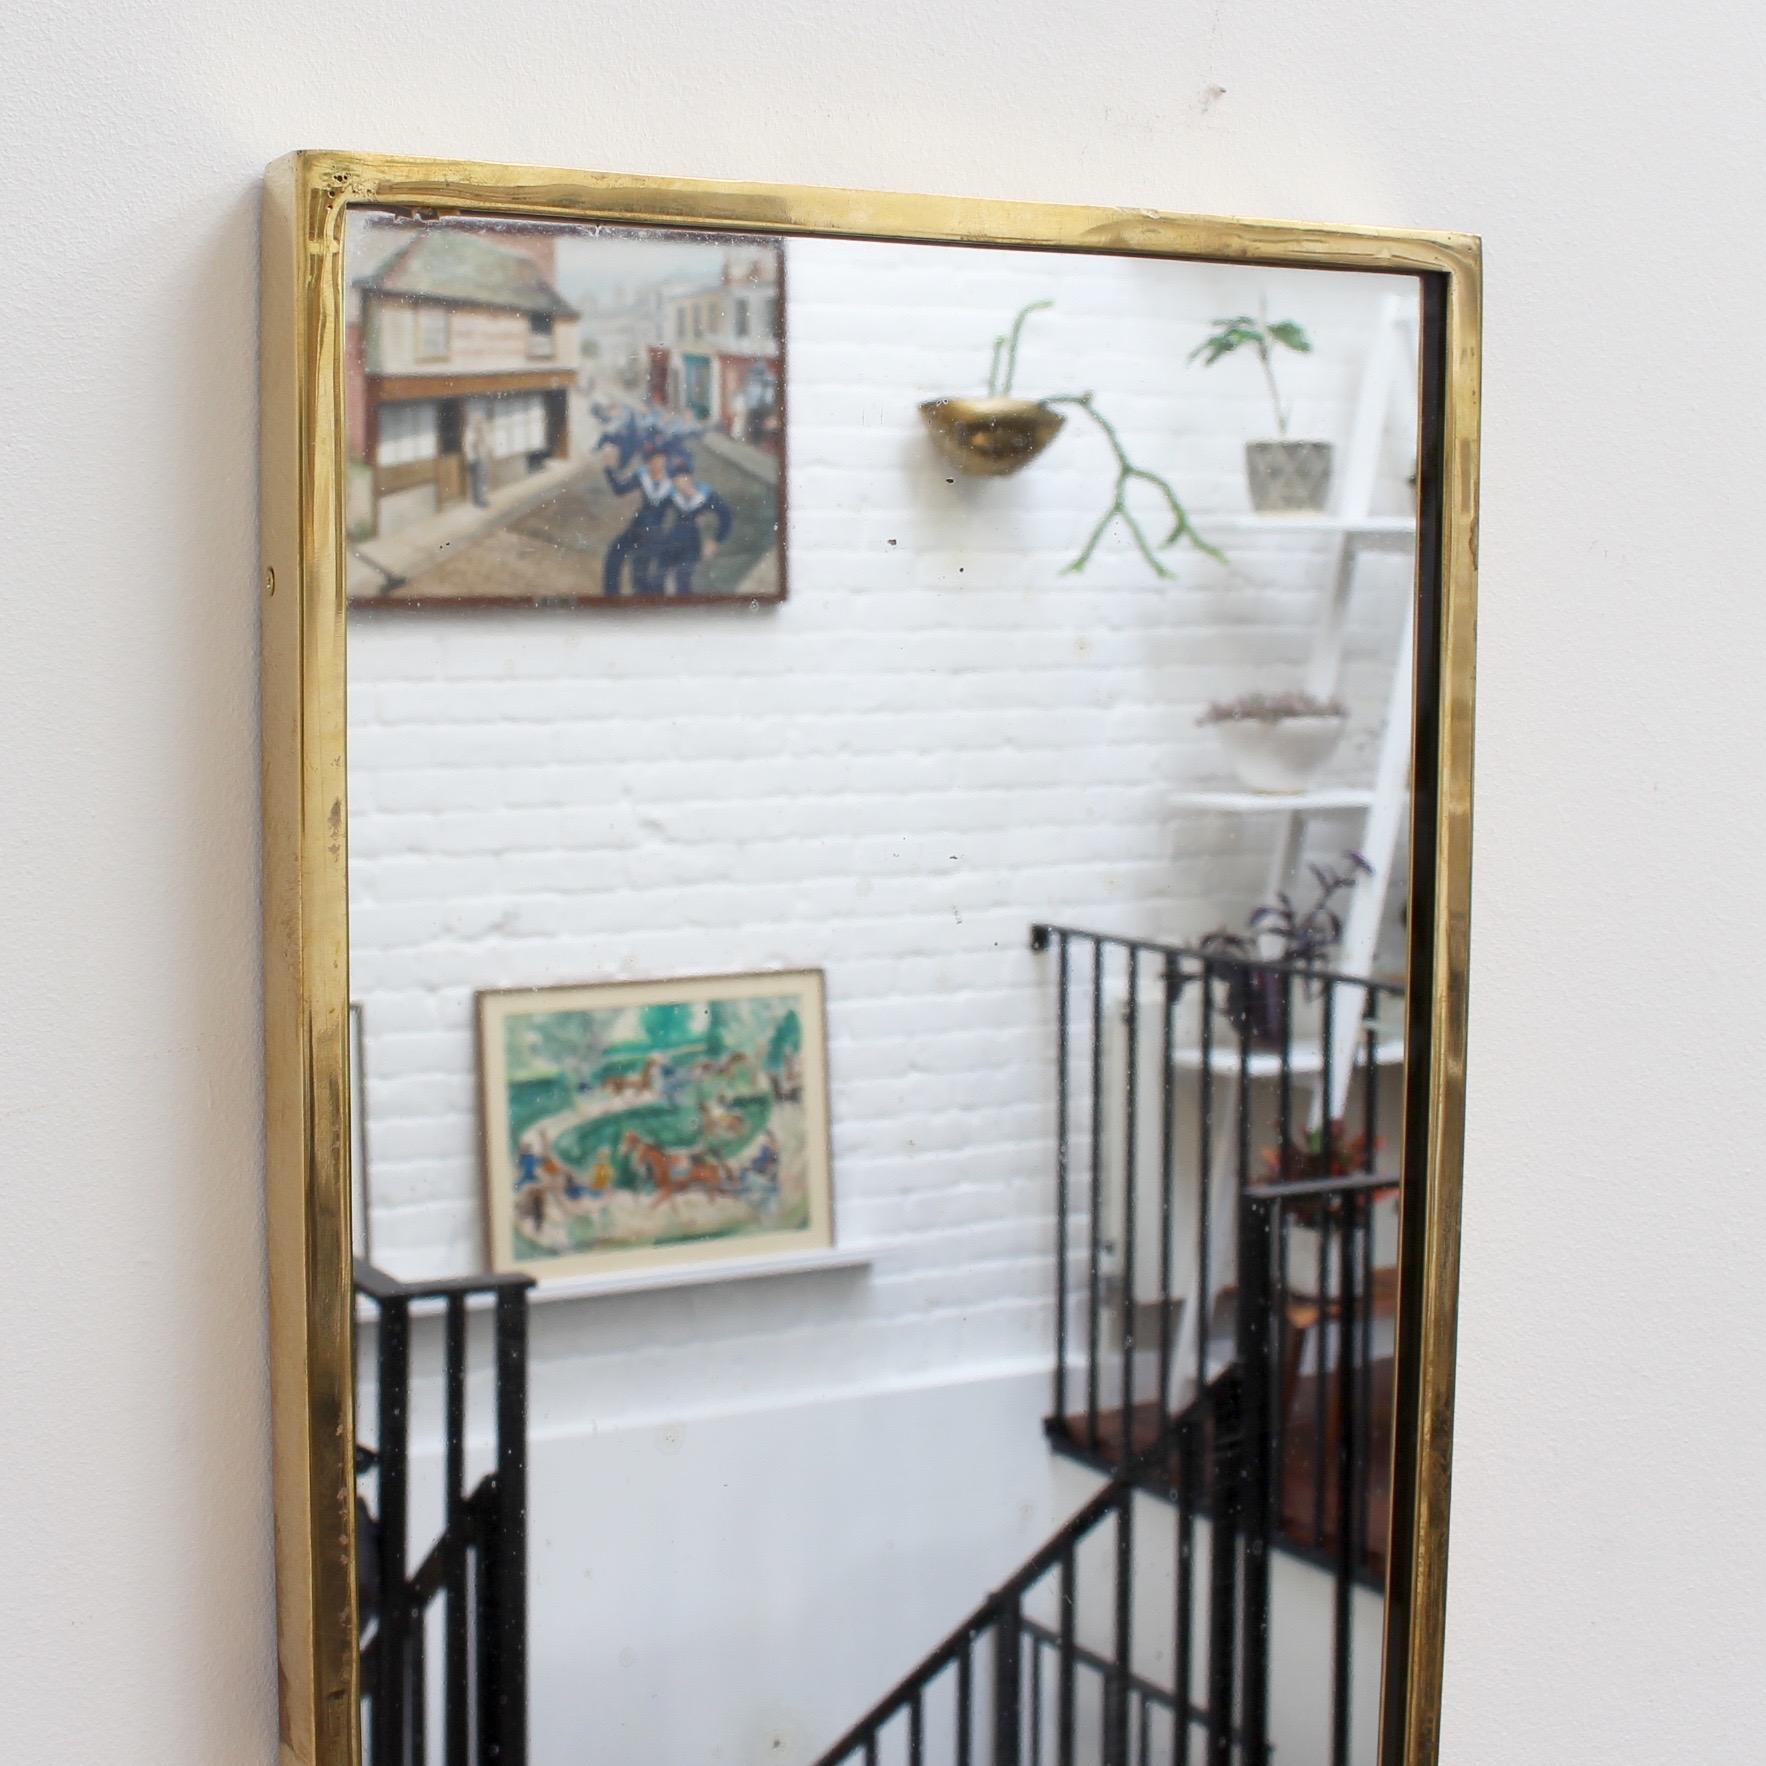 Miroir mural italien du milieu du siècle avec cadre en laiton, vers les années 1950. Le miroir est en forme de crête - classiquement élégant et distinctif dans le style moderne de Gio Ponti. Ce miroir est en très bon état. Le cadre en laiton et le